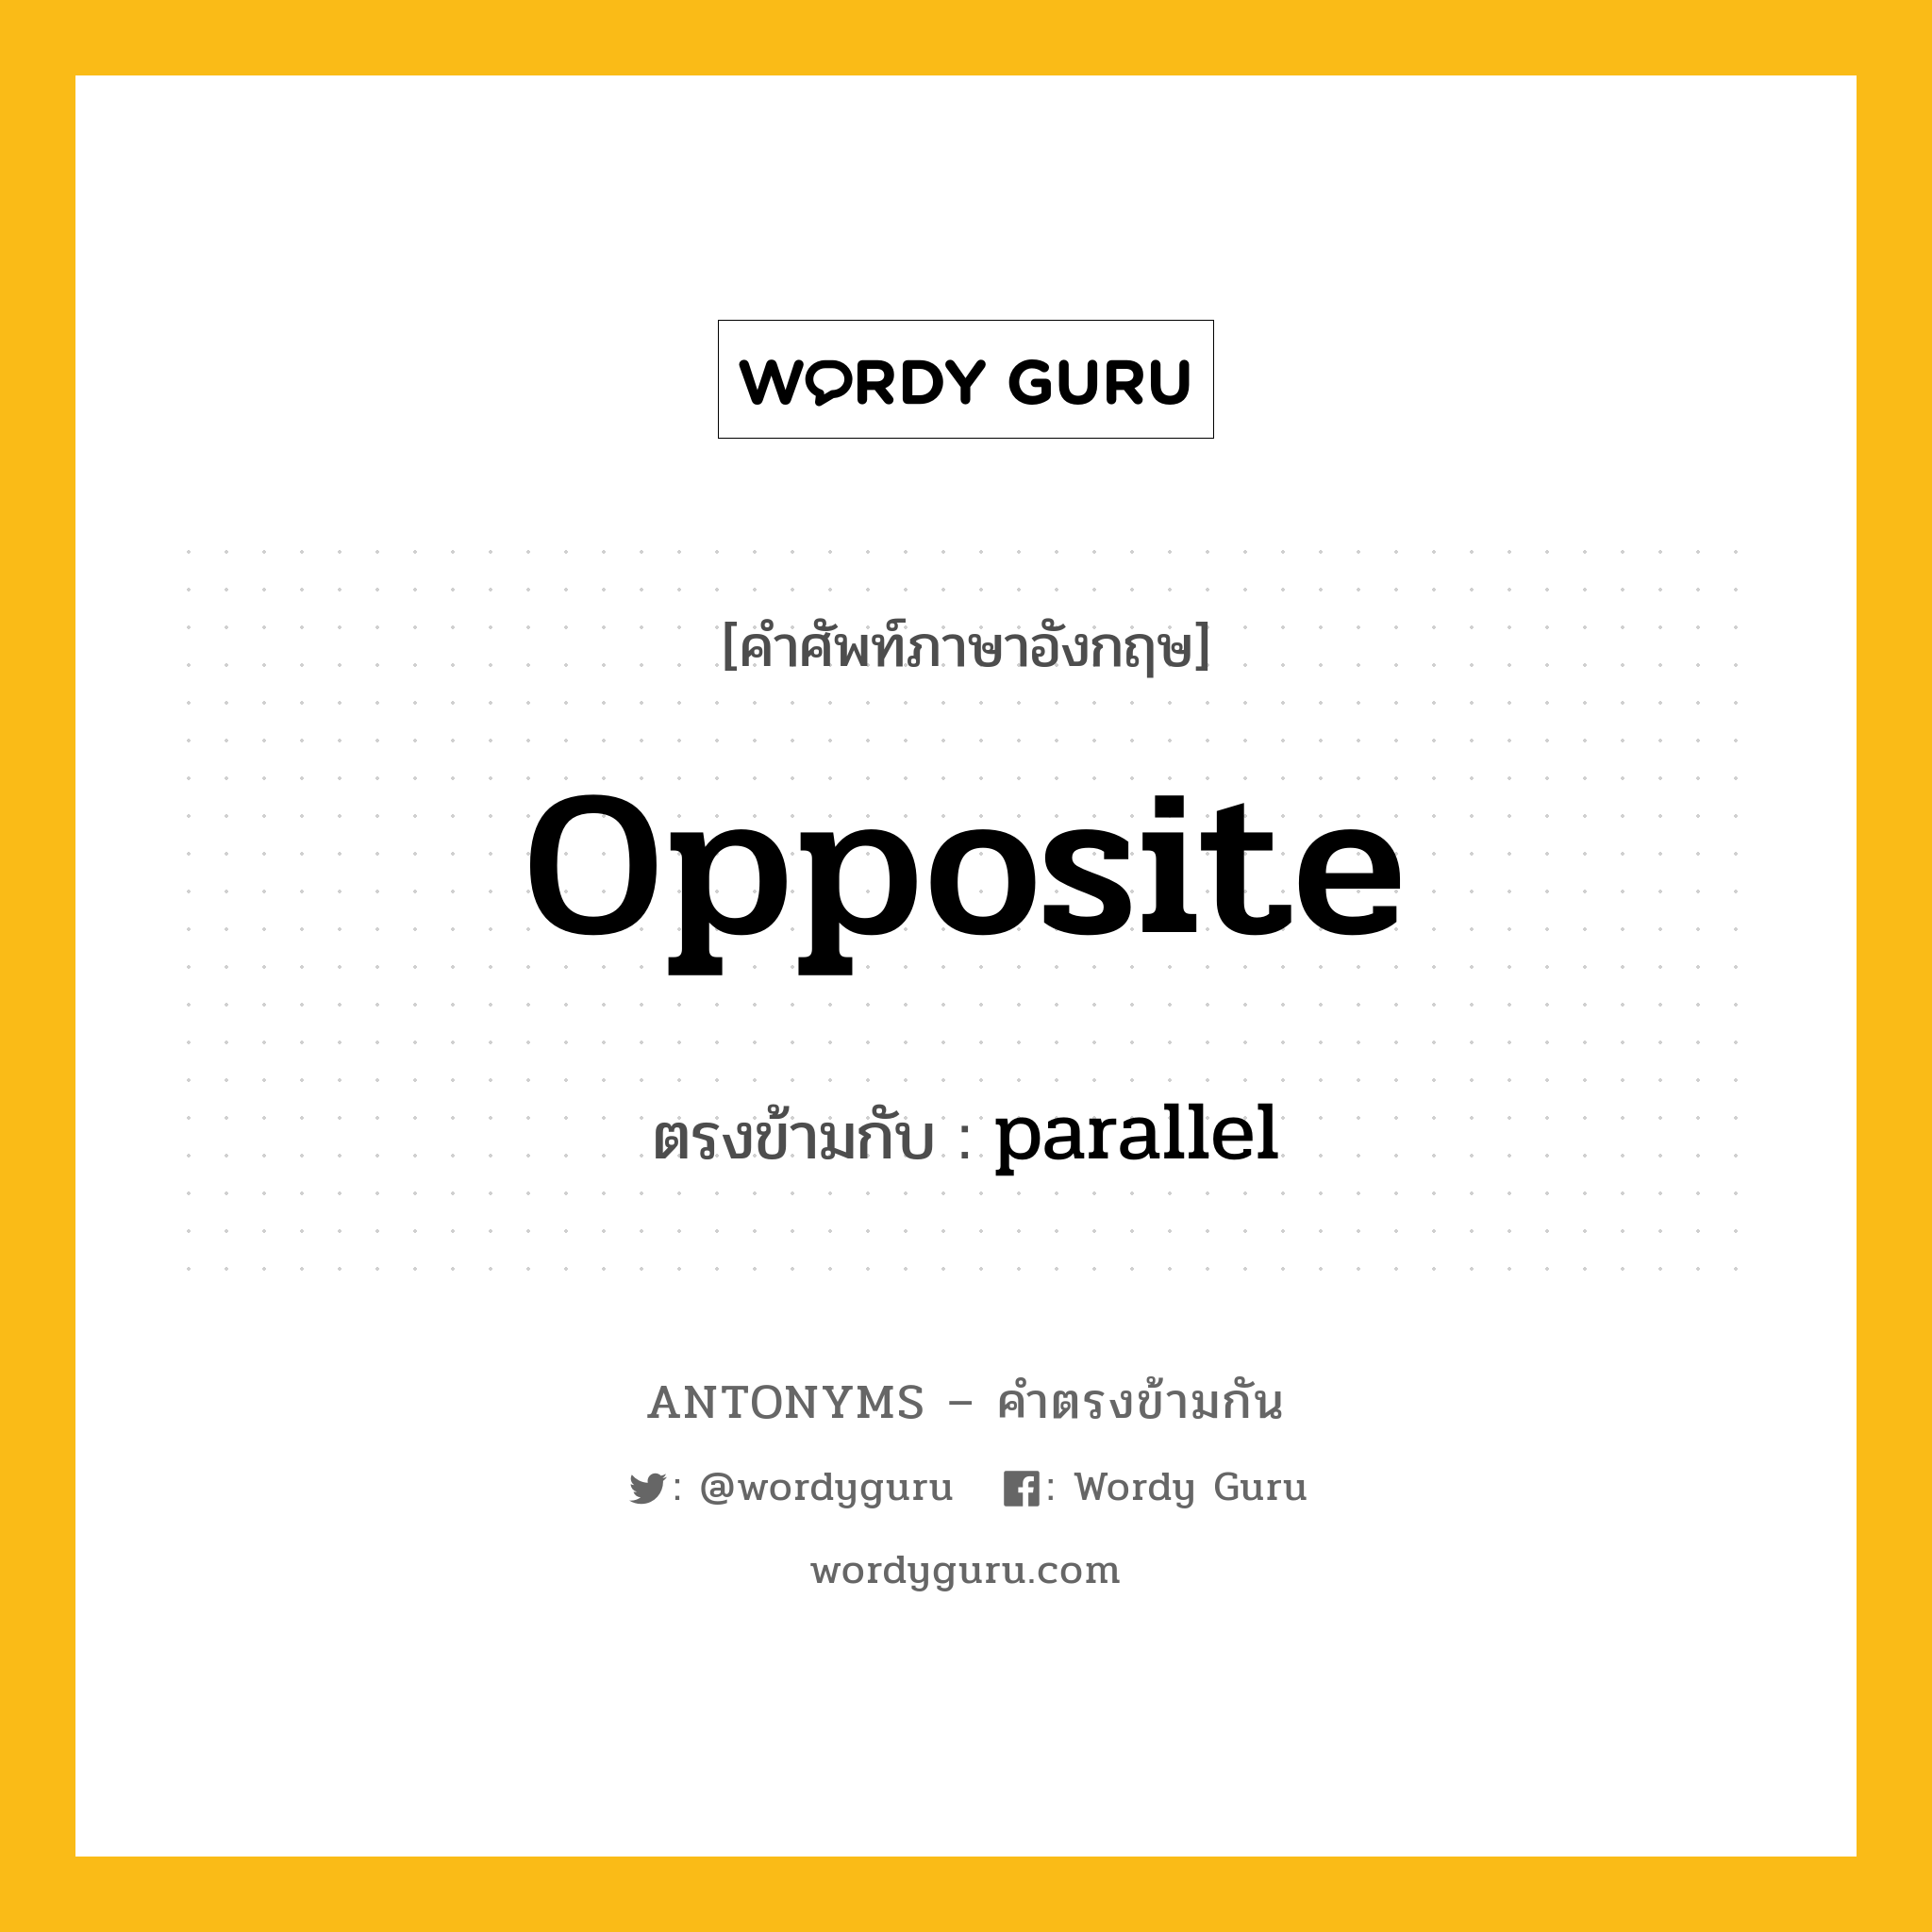 opposite เป็นคำตรงข้ามกับคำไหนบ้าง?, คำศัพท์ภาษาอังกฤษ opposite ตรงข้ามกับ parallel หมวด parallel